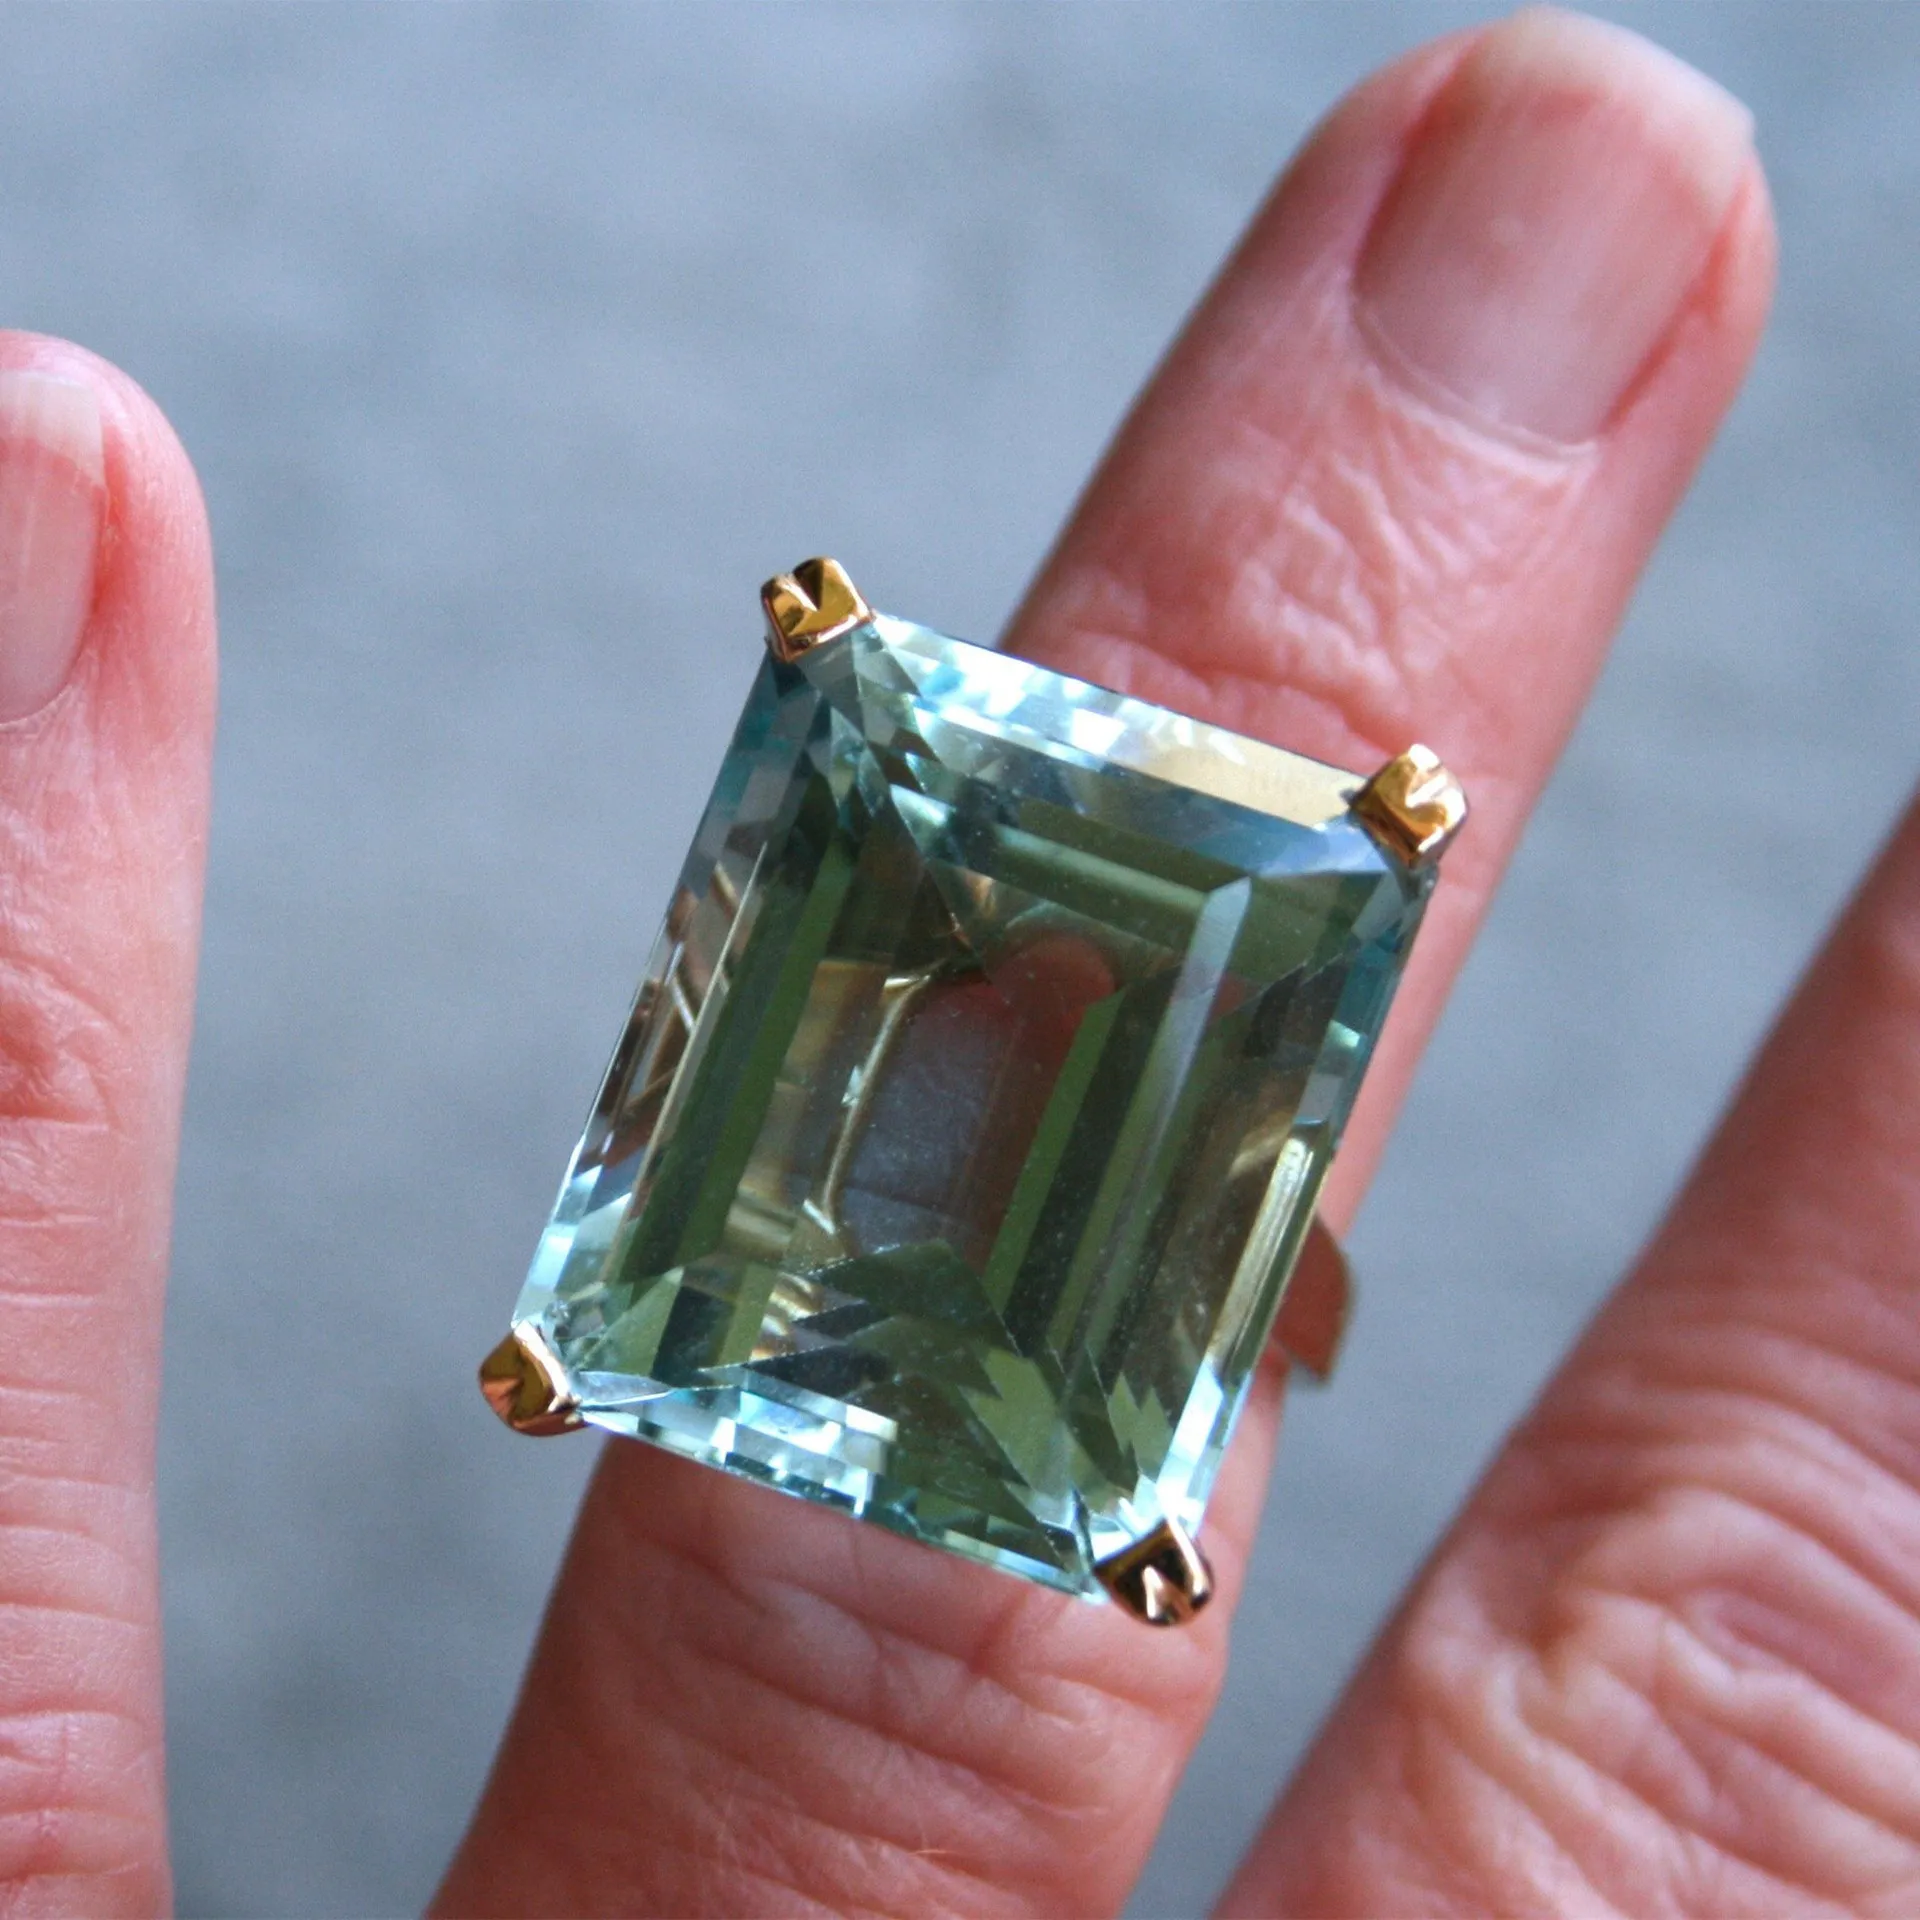 Морской синий топаз камень принцесса бриллиантовое кольцо обручальное кольцо с сапфиром 14-каратное золото Anillos для женщин Bizuteria нефритовые украшения с бриллиантами 2010228f